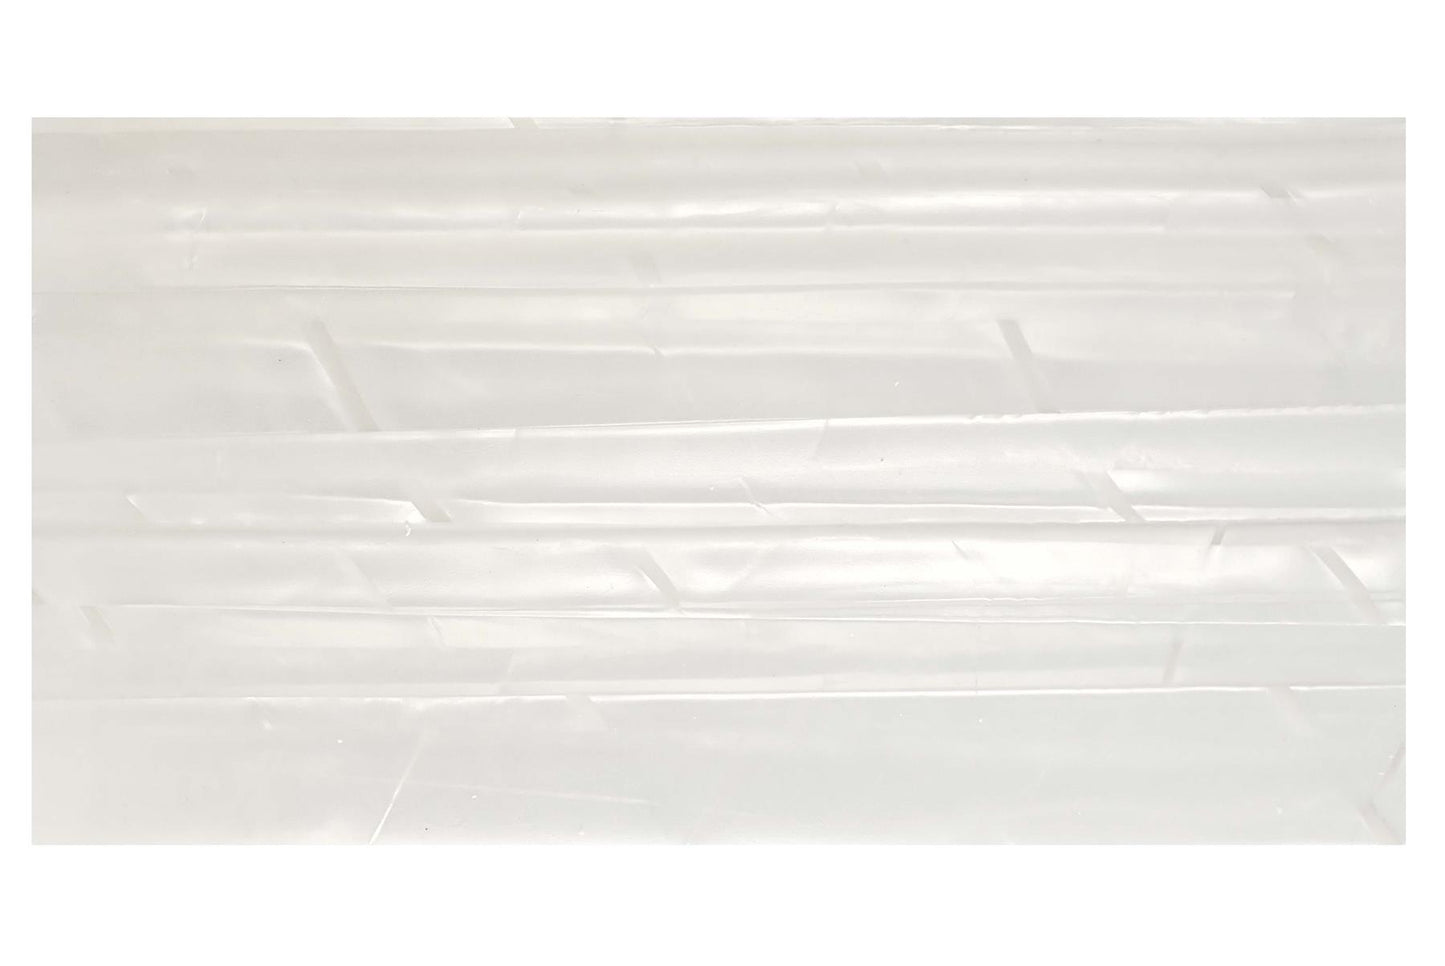 Incudo White Vintage Pearloid Celluloid Sheet - 200x100x2mm (7.9x3.94x0.08")